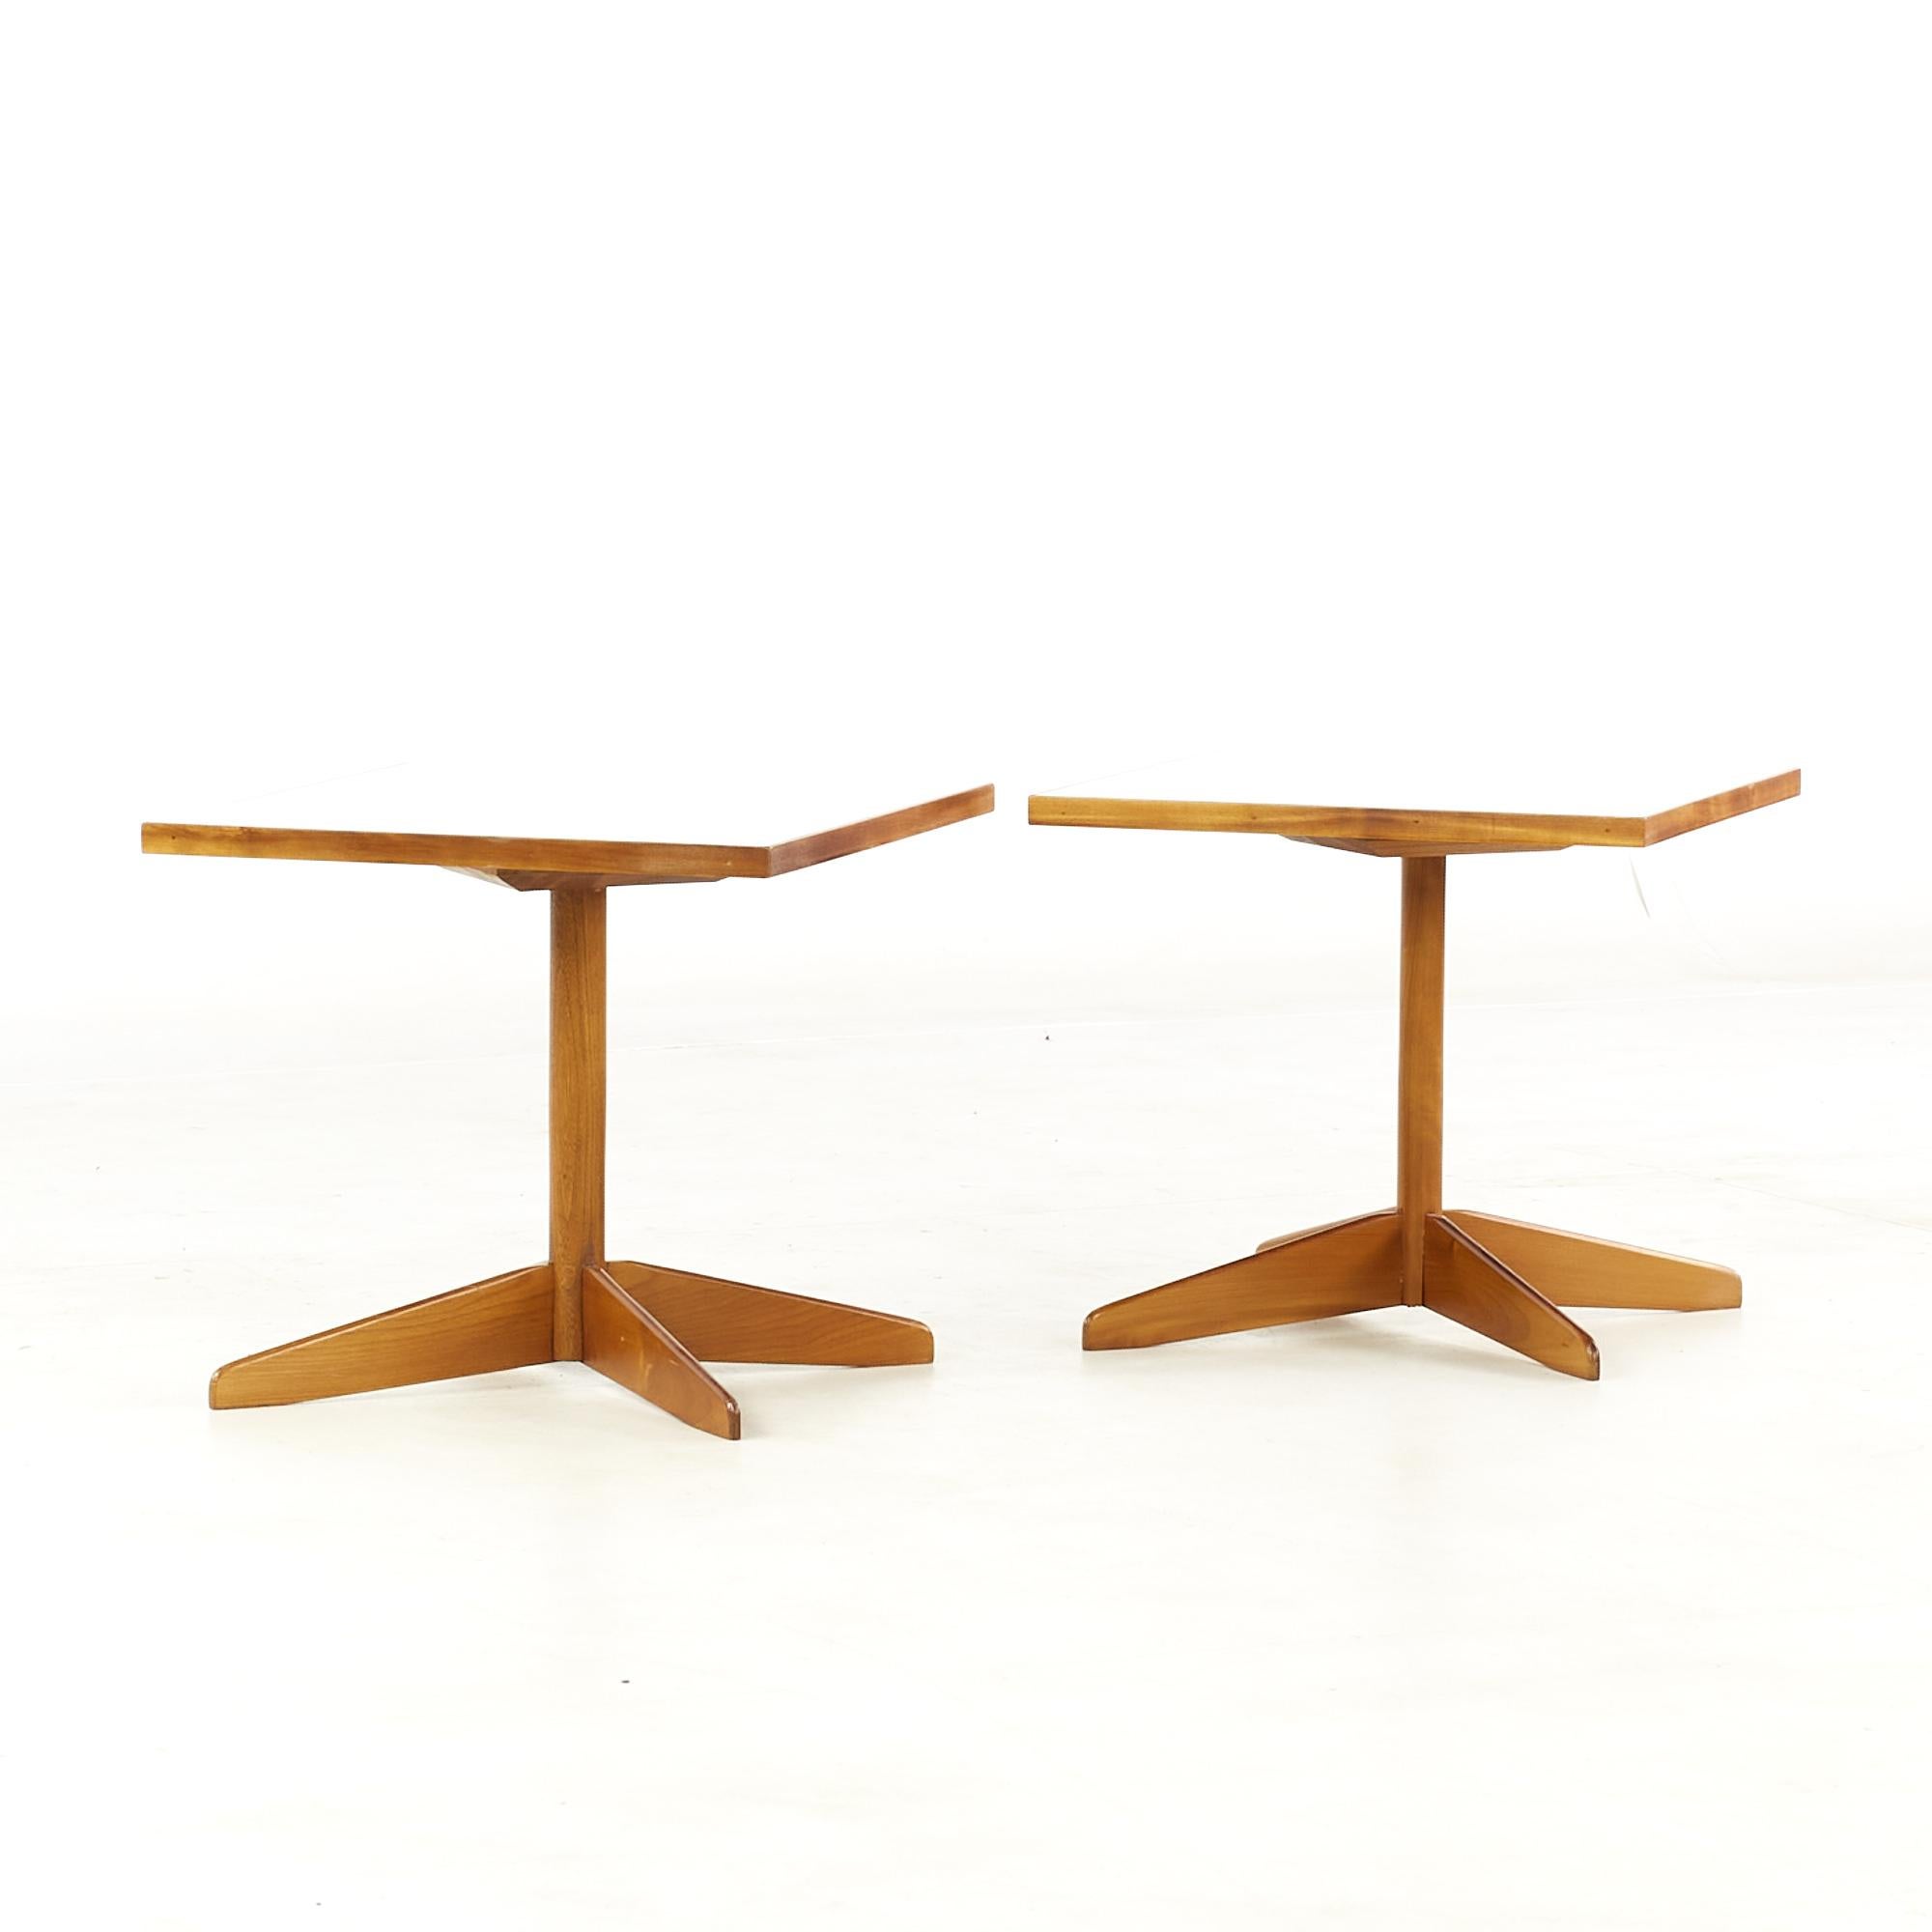 Edward Wormley-Stil Mitte des Jahrhunderts Nussbaum und weißes Laminat End Tabellen - Paar.

Jeder Tisch misst: 18 breit x 18 tief x 16 Zoll hoch.

Alle Möbelstücke sind in einem so genannten restaurierten Vintage-Zustand zu haben. Das bedeutet,